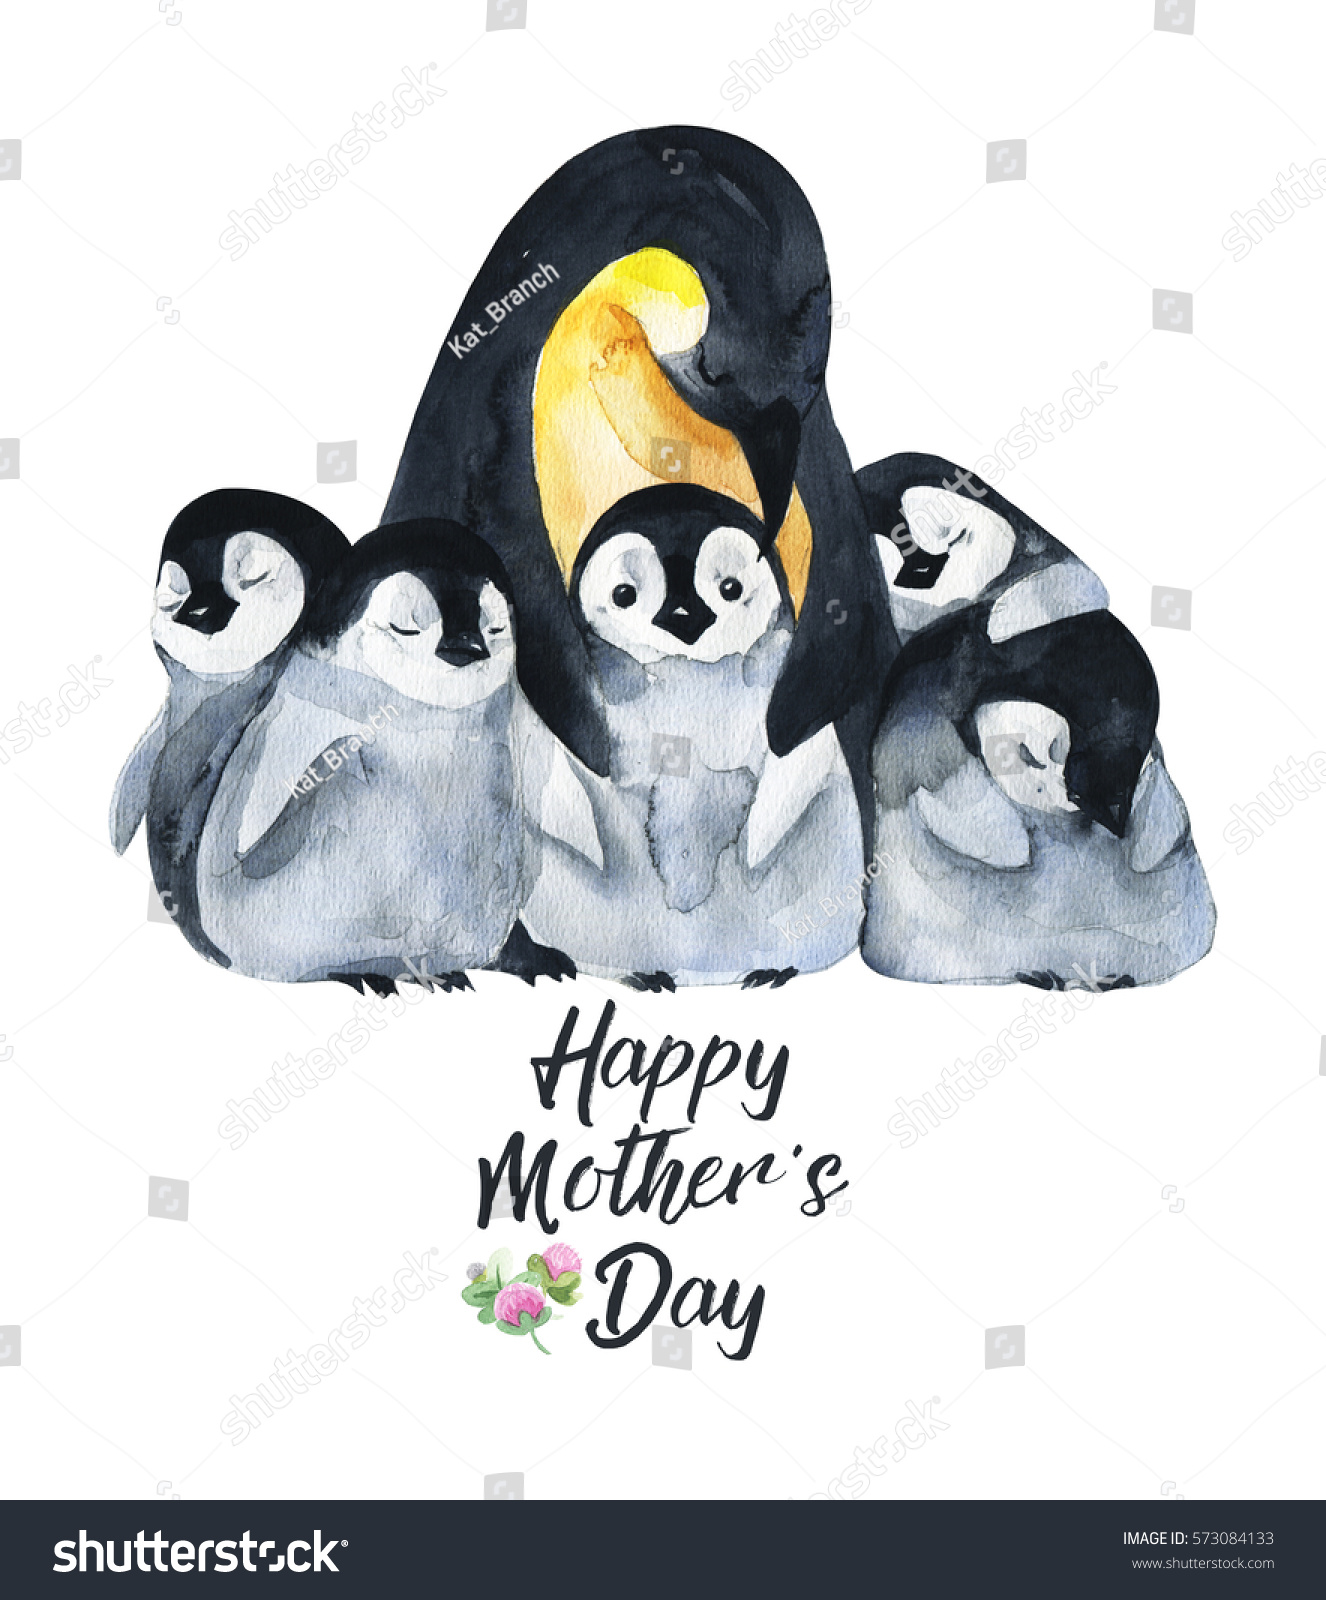 母の日の水彩手描きのカード 白い背景に手描きのリアルなイラスト動物 赤ちゃんとペンギン のイラスト素材